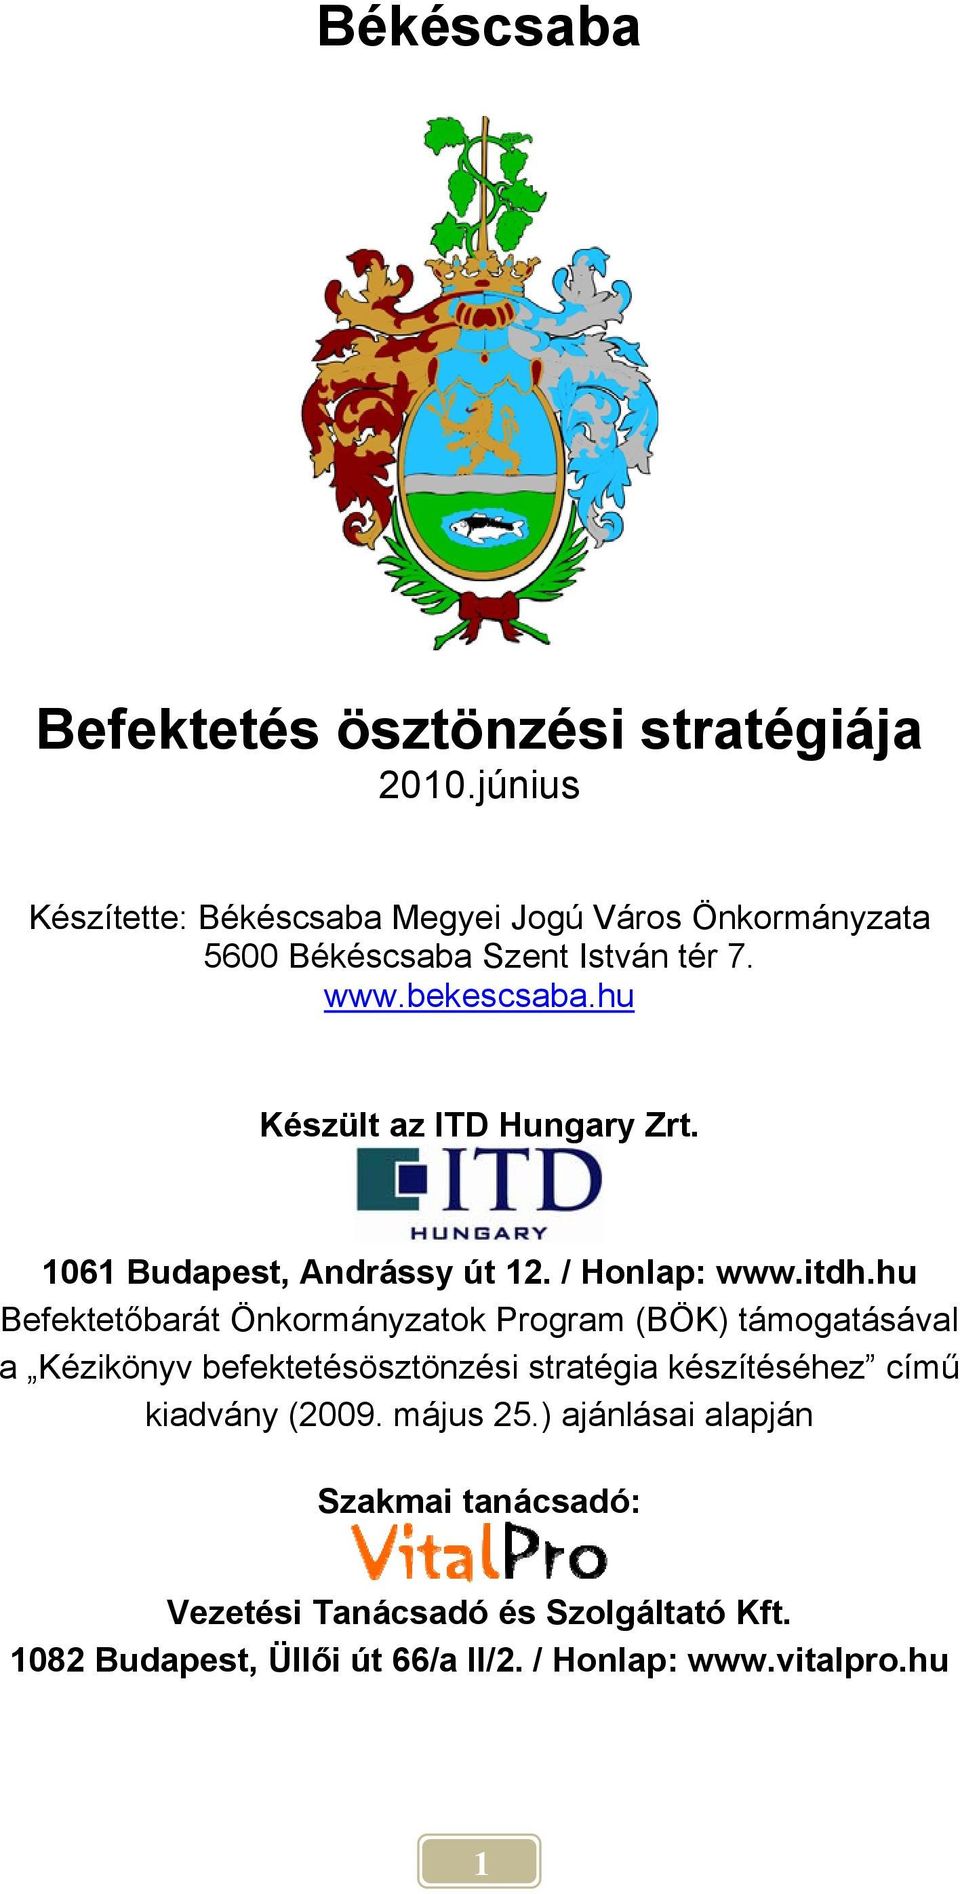 hu Készült az ITD Hungary Zrt. 1061 Budapest, Andrássy út 12. / Honlap: www.itdh.